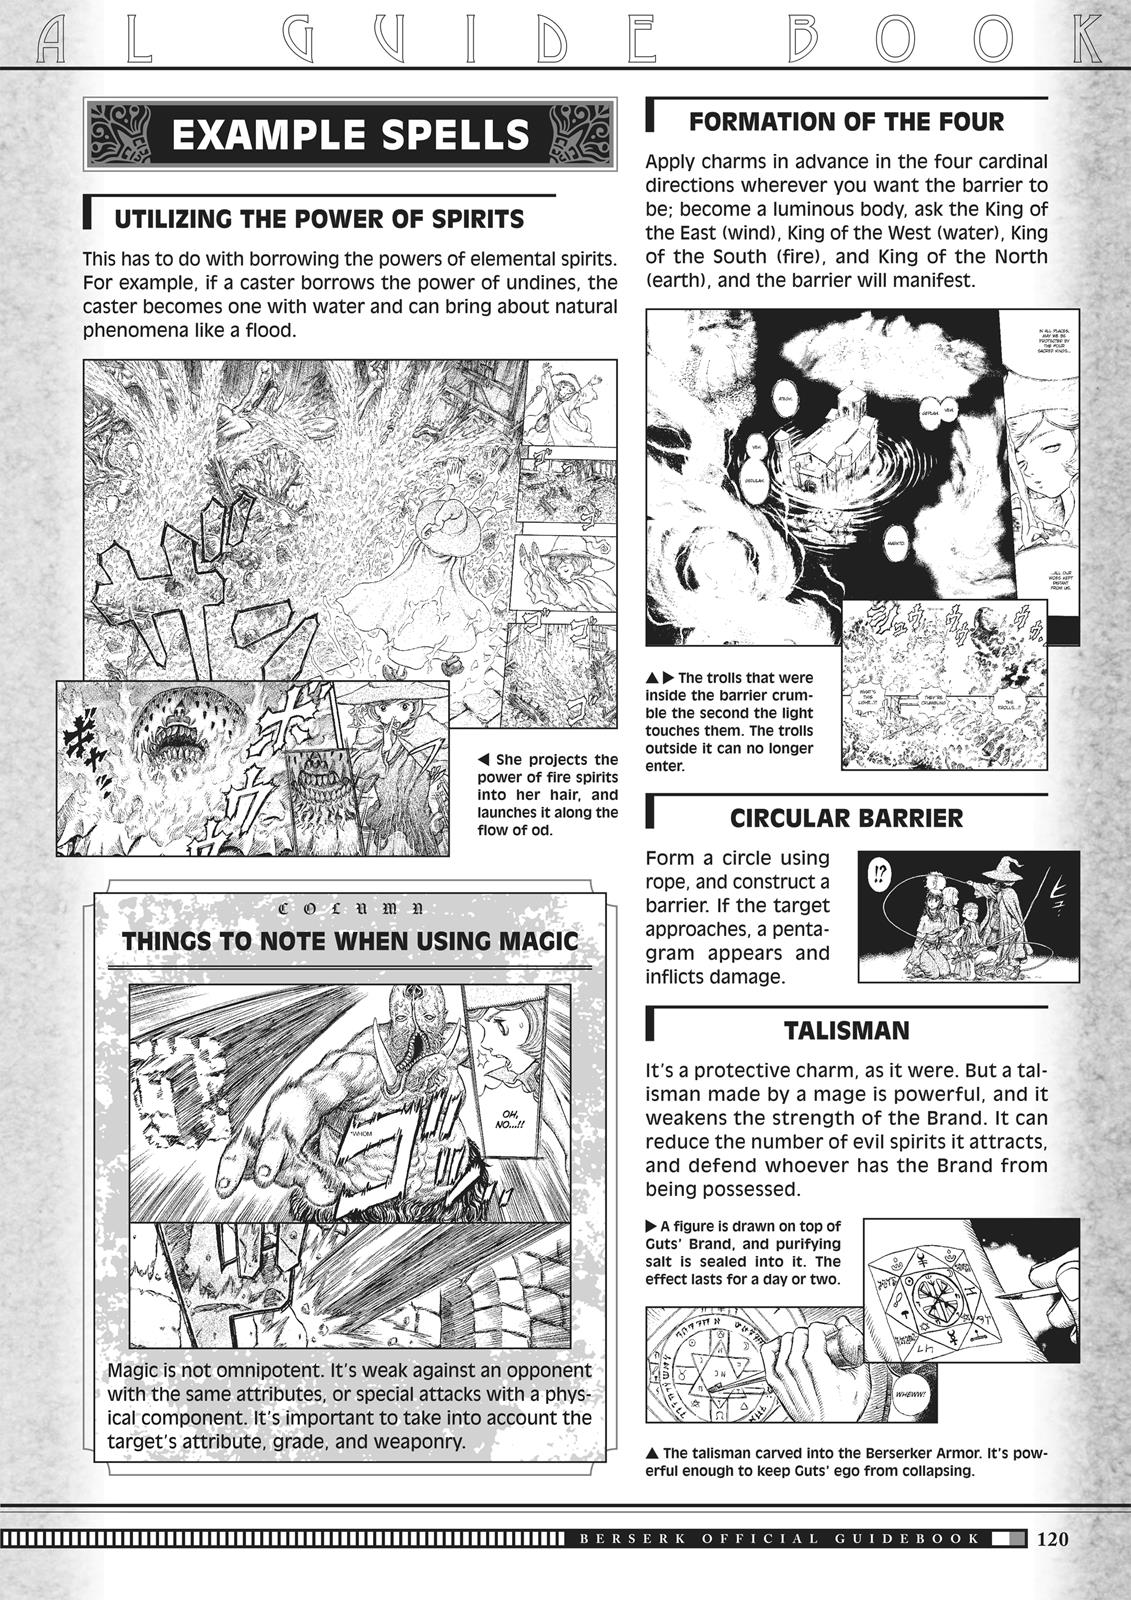 Berserk Manga Chapter 350.5 image 118